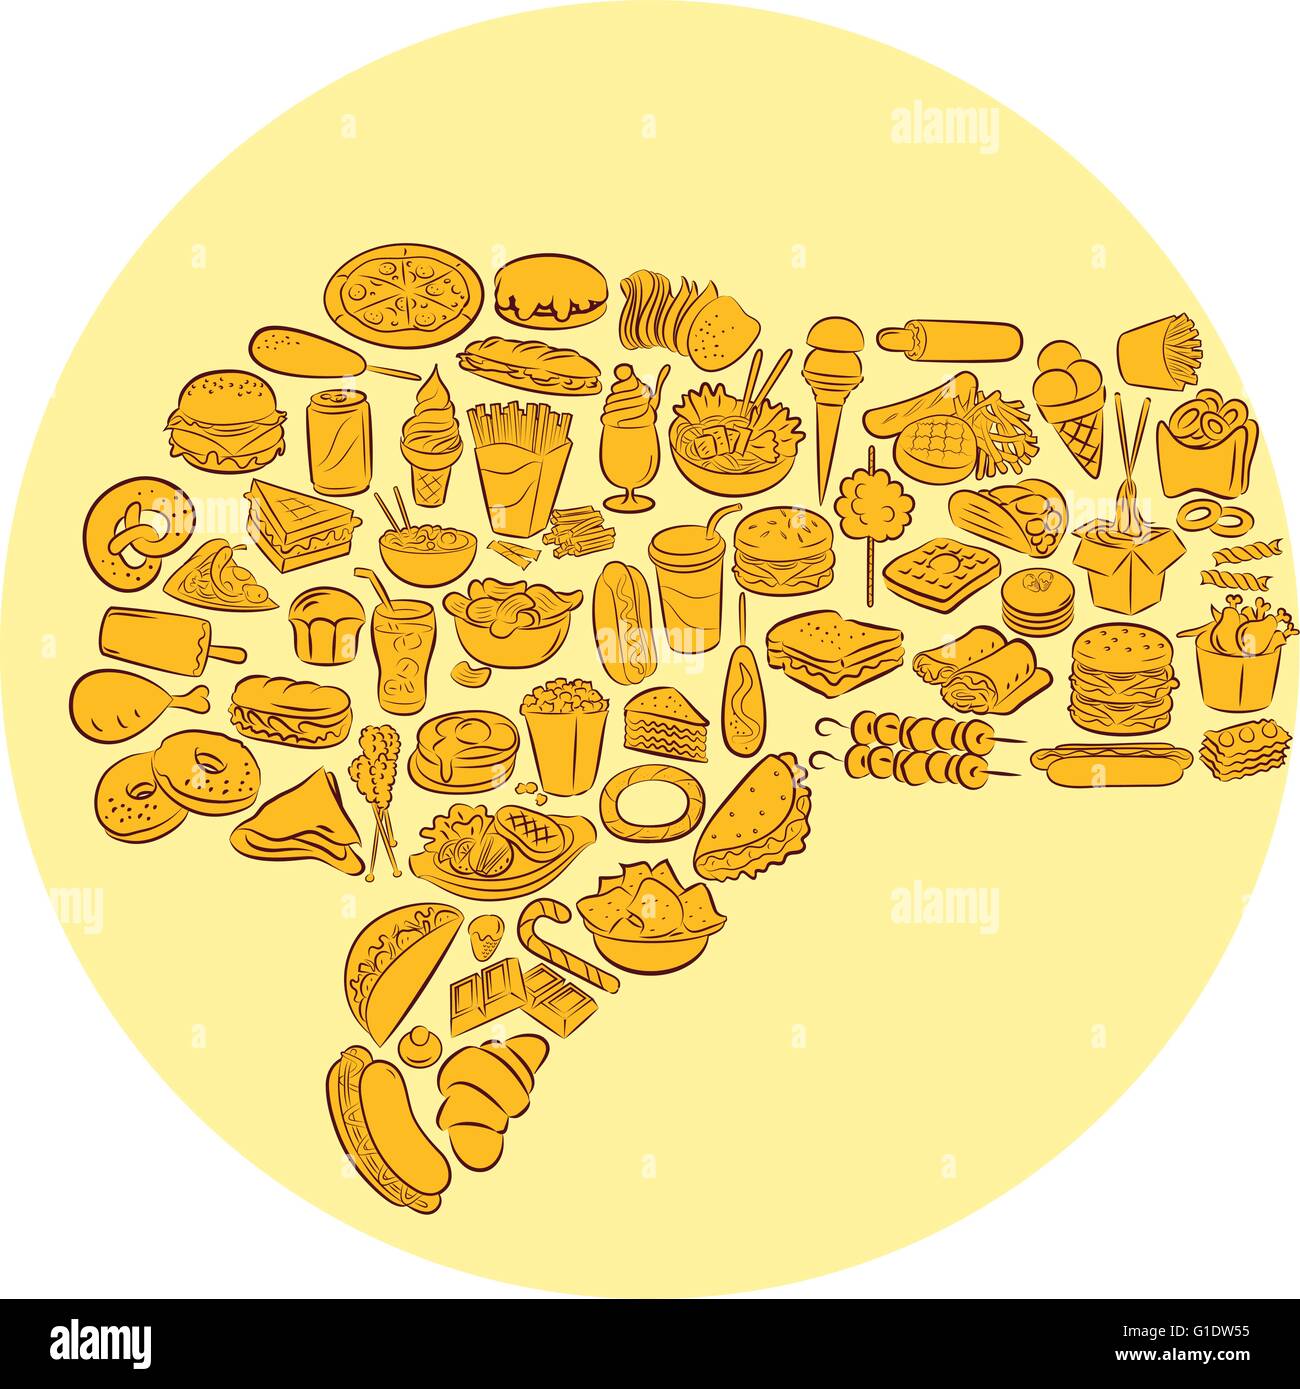 Illustrazione Vettoriale di fast food items gesticolando pollice in giù su sfondo giallo Illustrazione Vettoriale